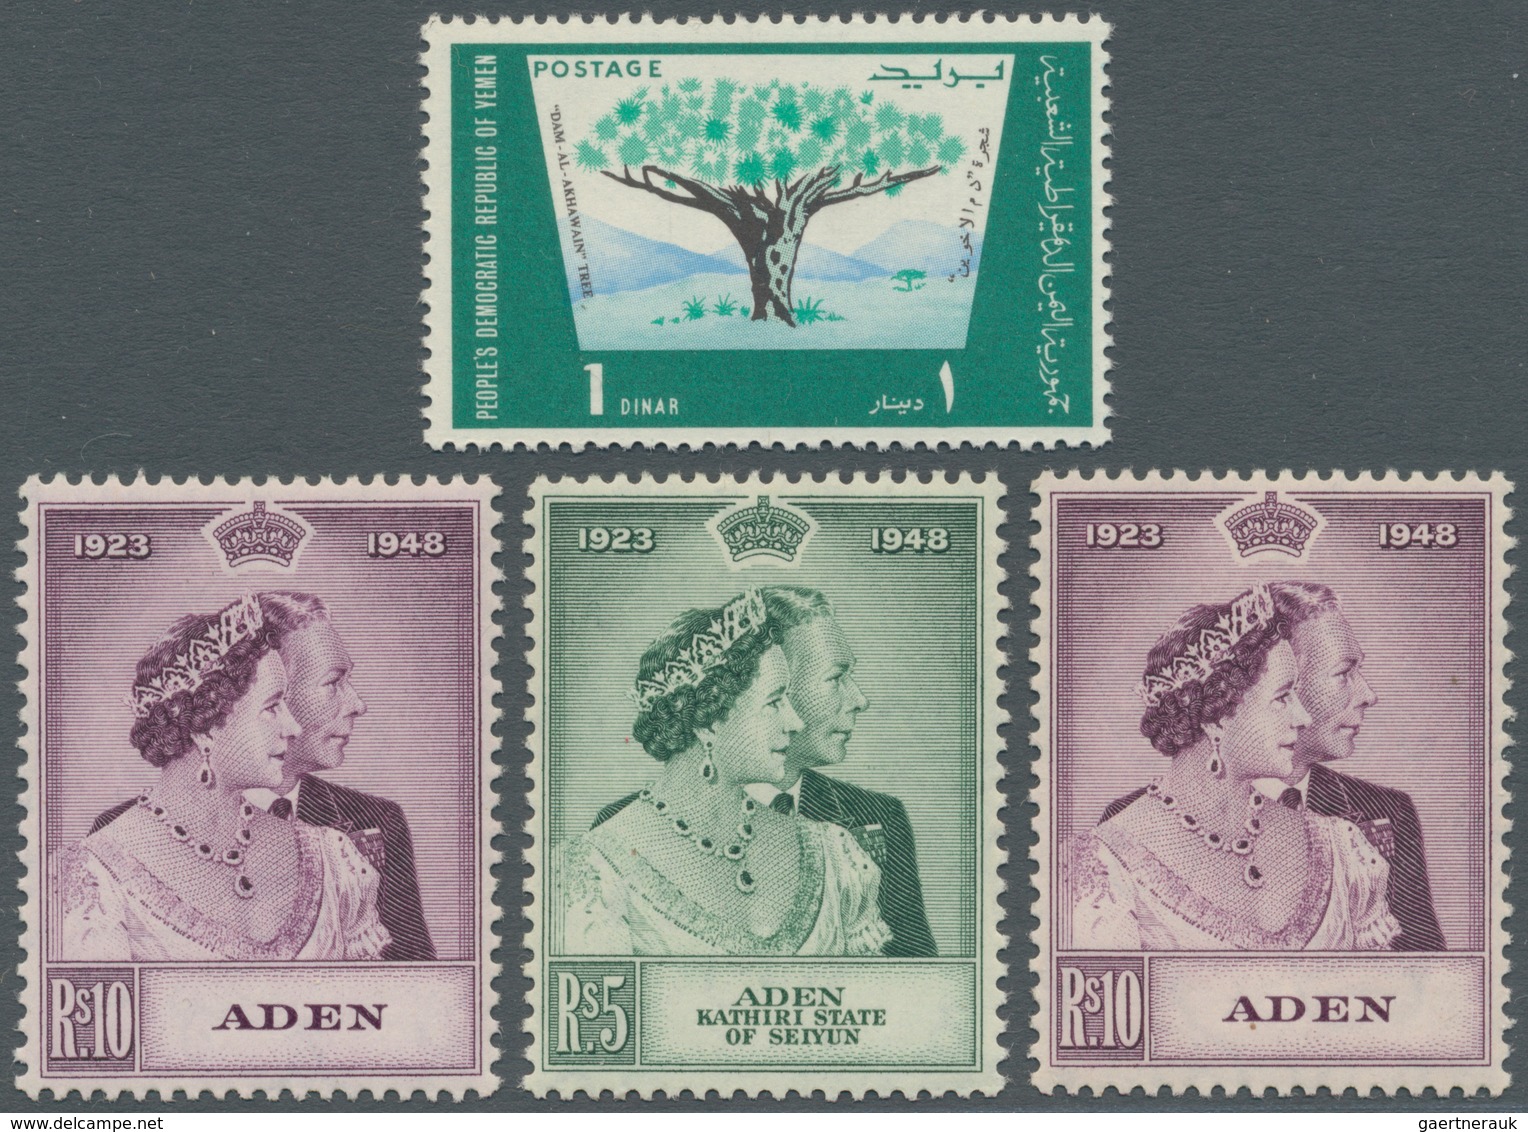 22008 Aden: 1948/1970 (ca.), Accumulation In Box Incl. Kathiri State Of Seiyun, Mahra State, Qu'aiti State - Jemen